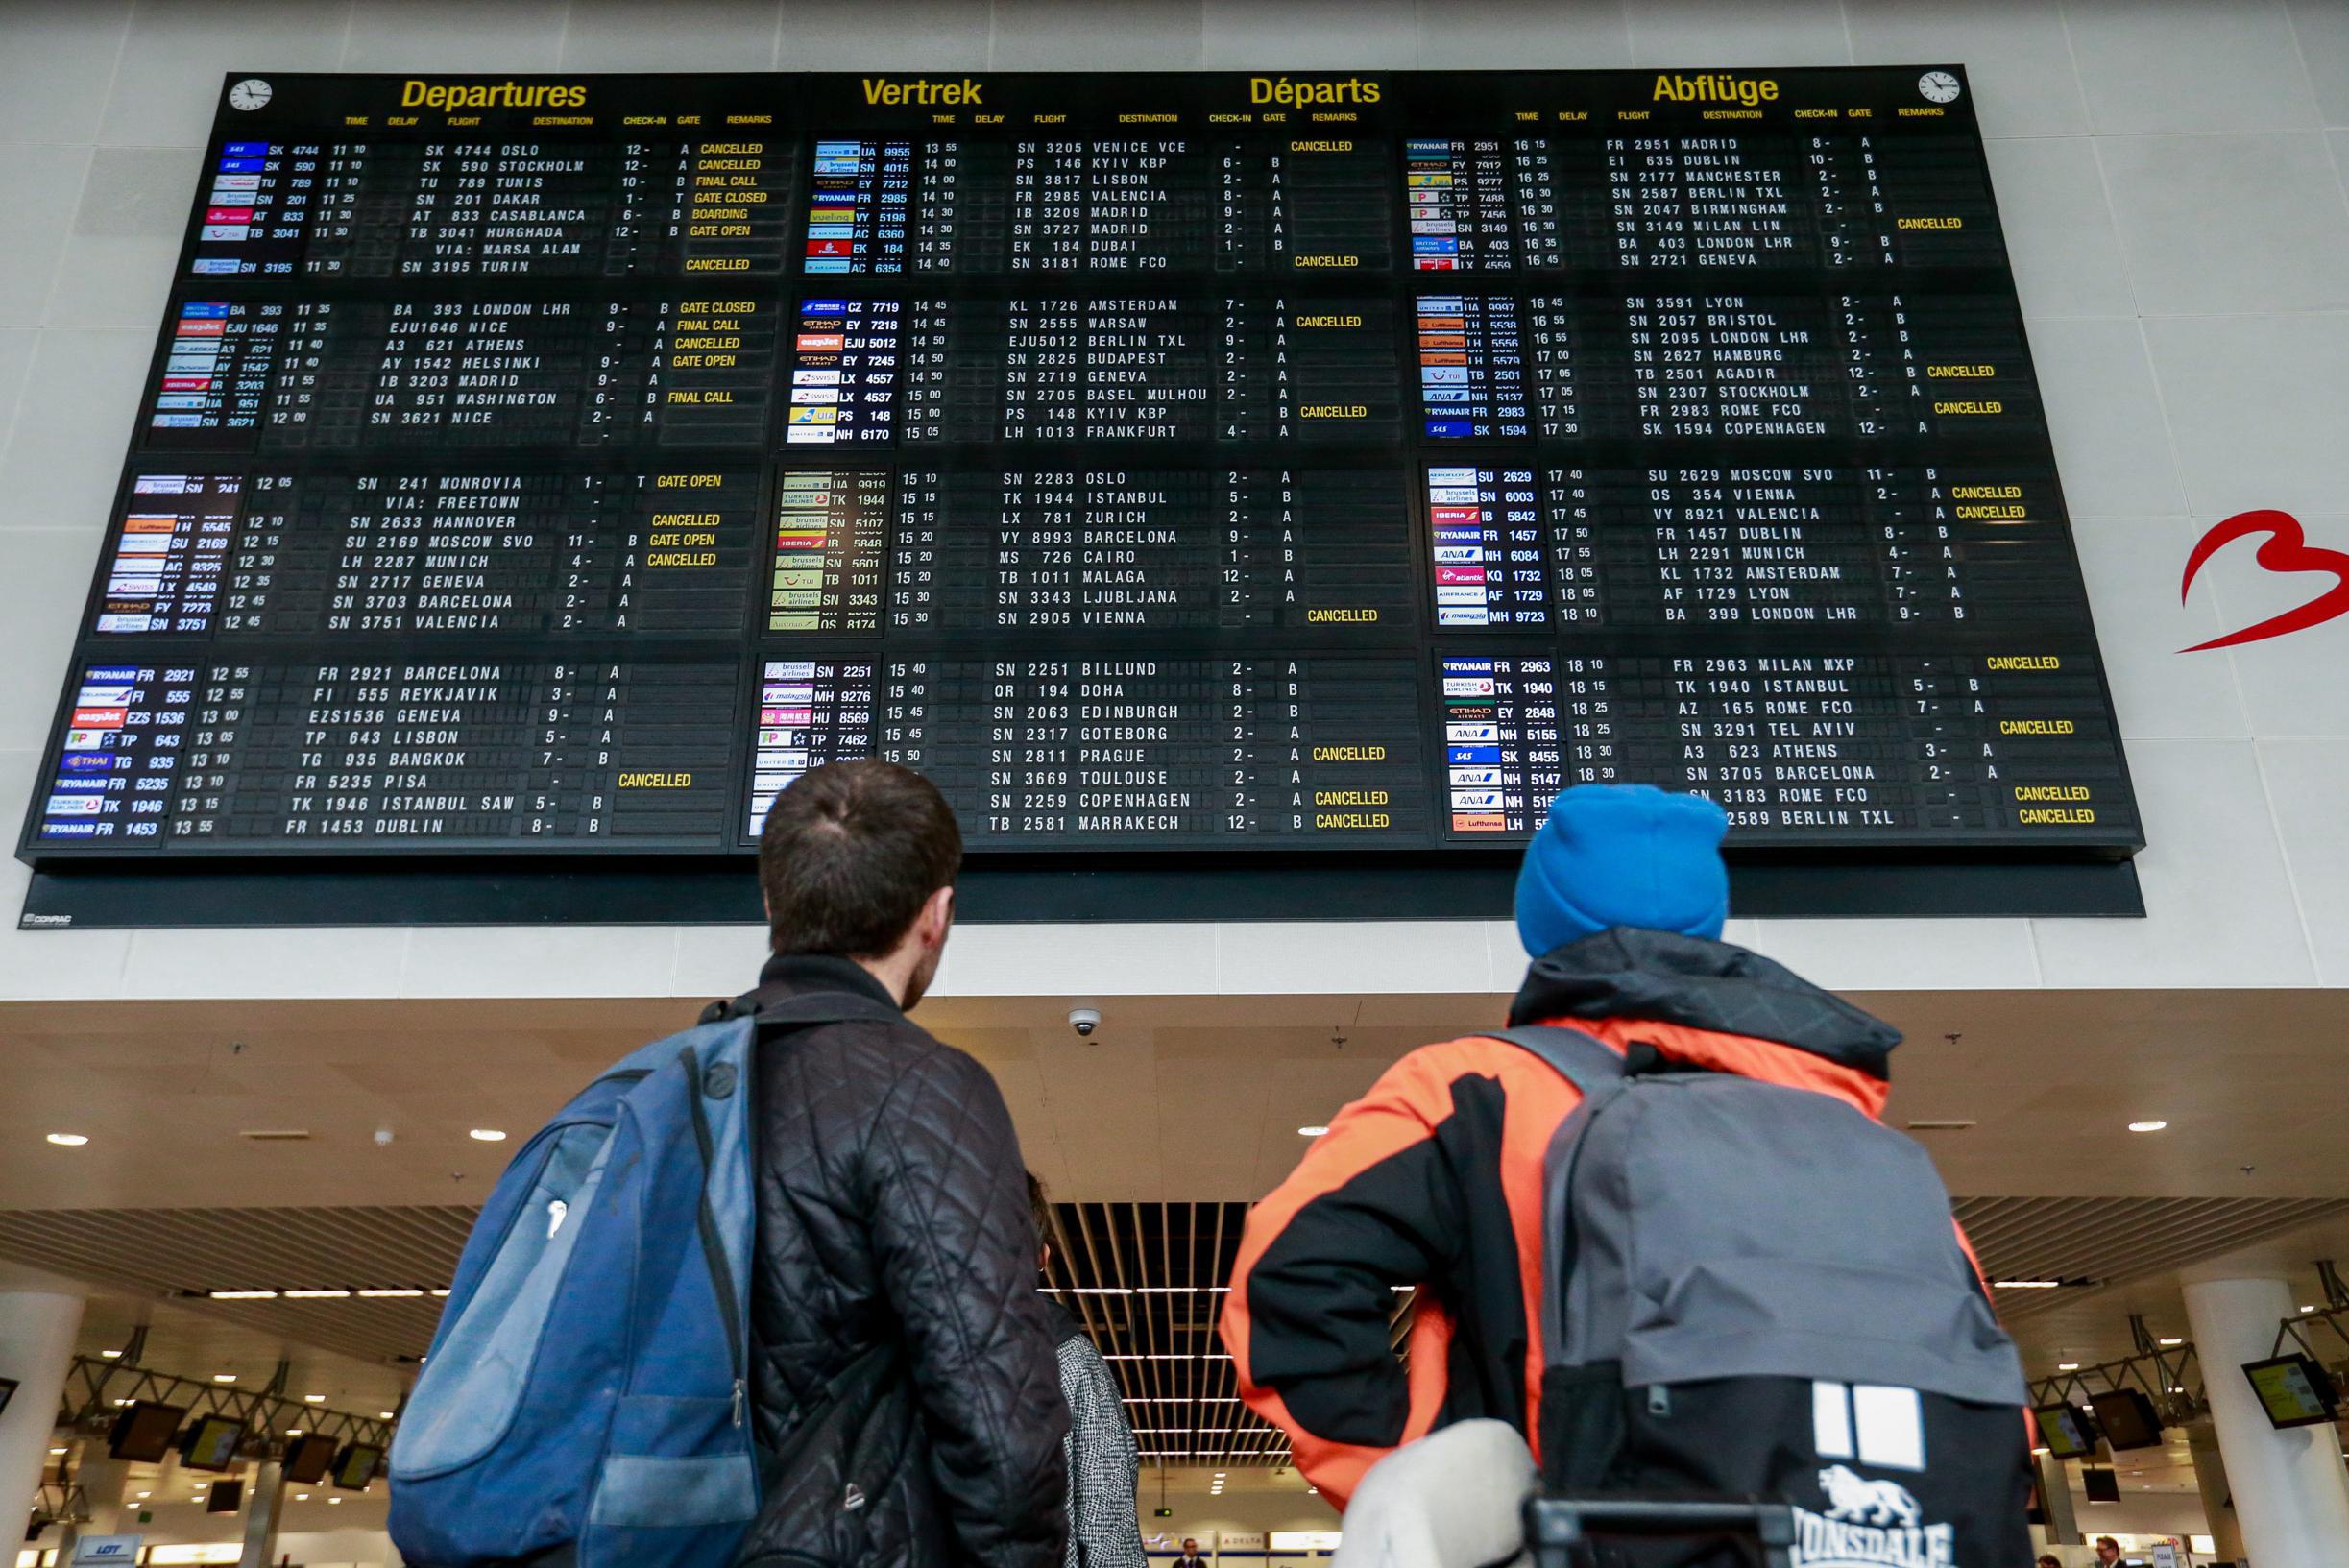 Brussels Airport schrapt maandag alle vertrekkende vluchten: “Kunnen veiligheid van passagiers niet garanderen”